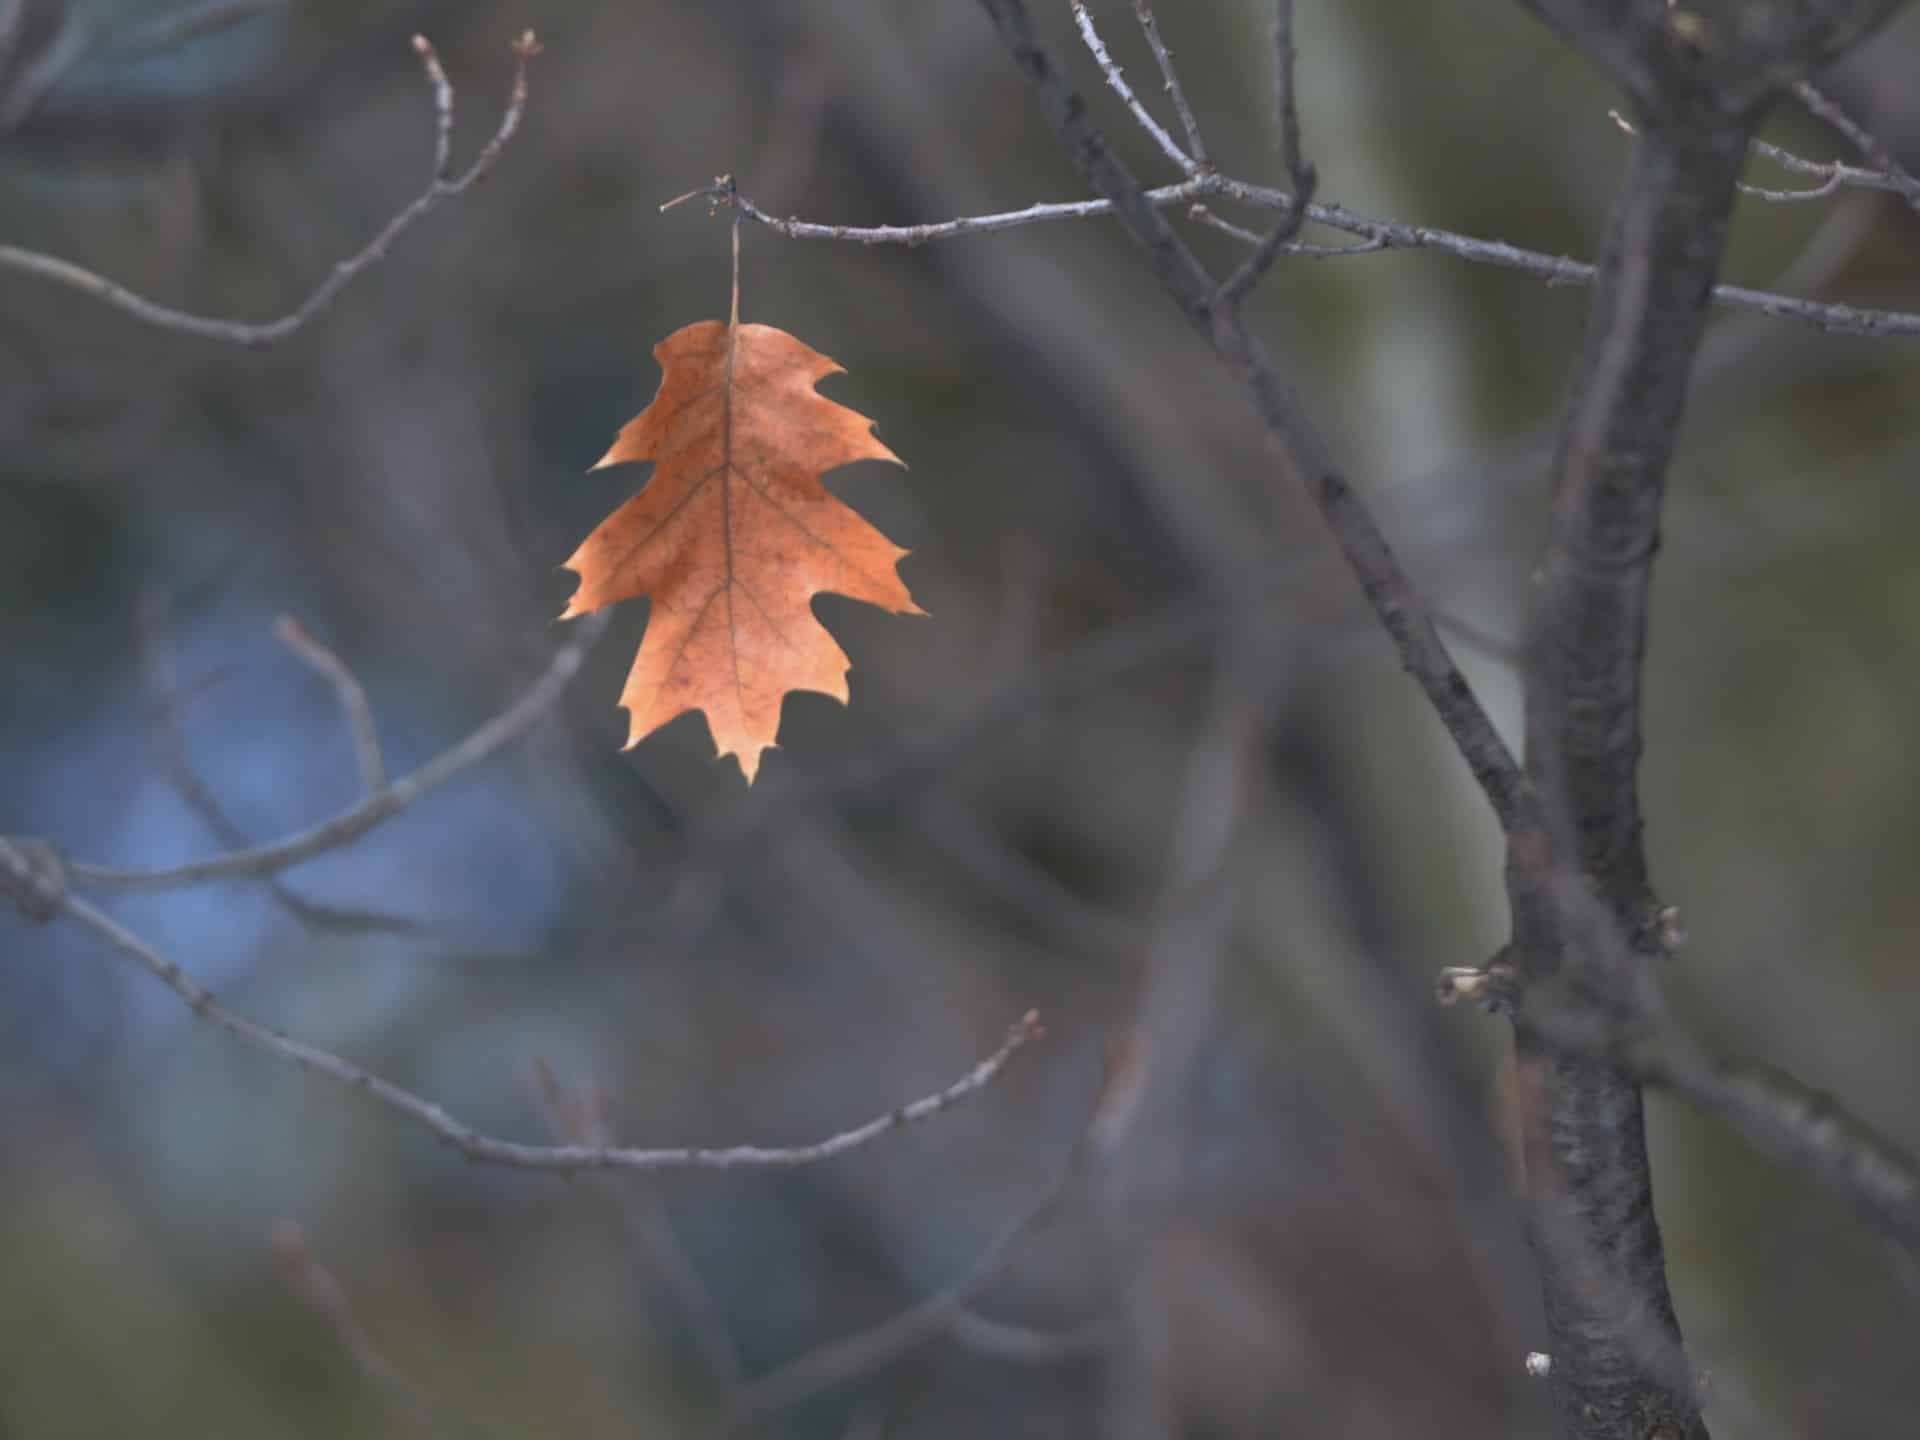 Last leaf on a tree